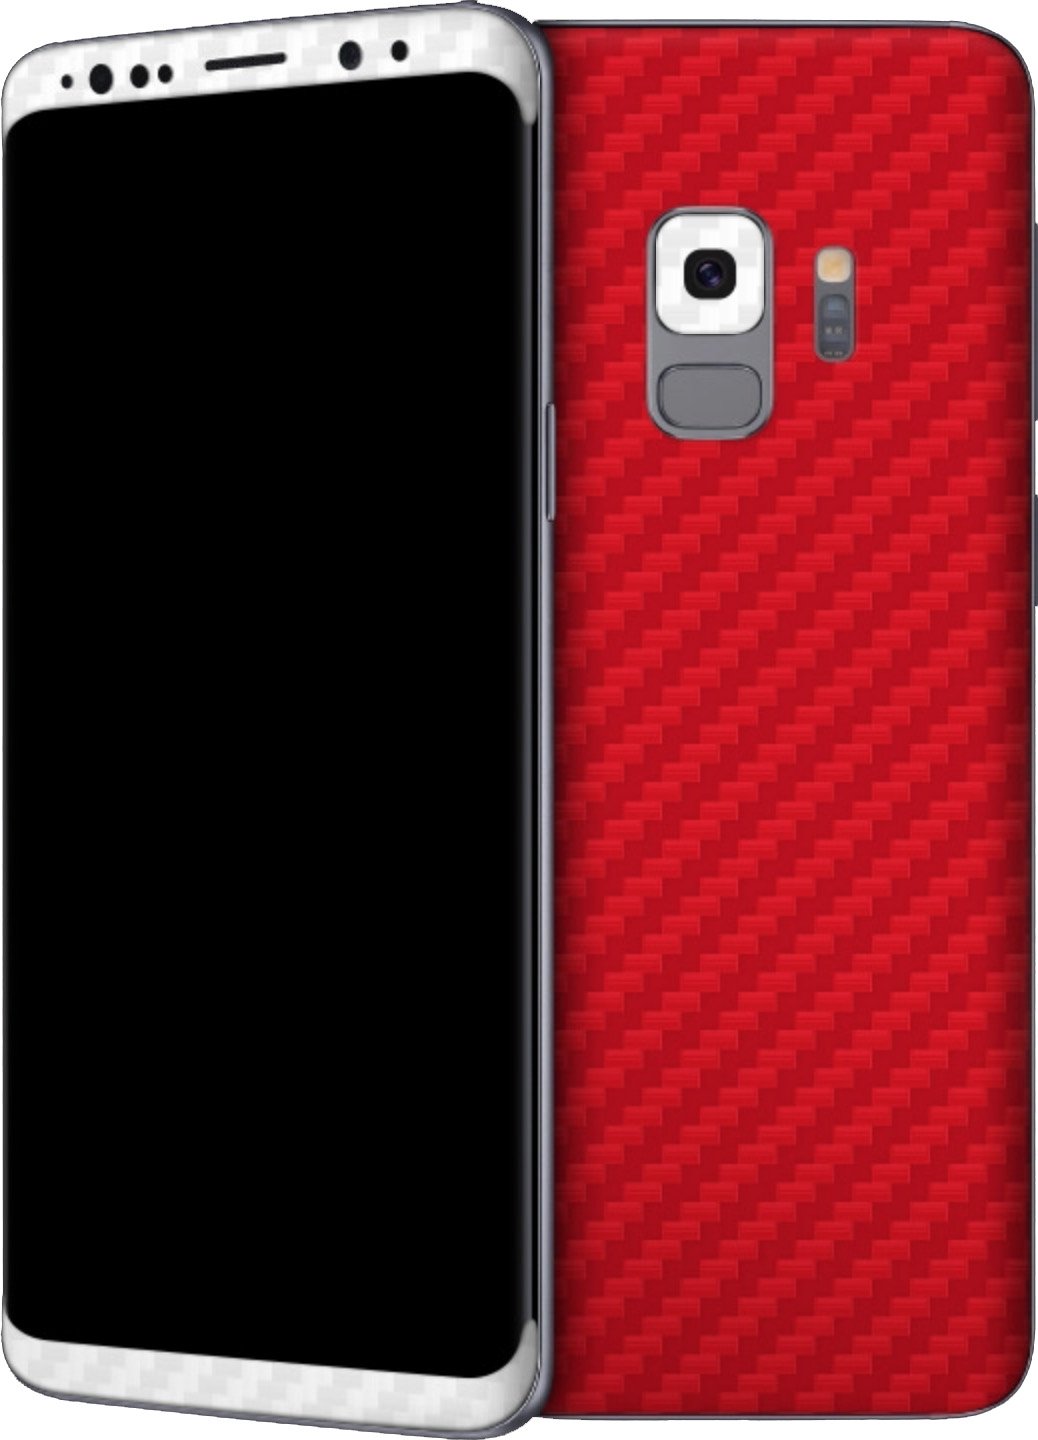 android central wallpaper galerie,handyhülle,mobiltelefon,gadget,rot,schwarz